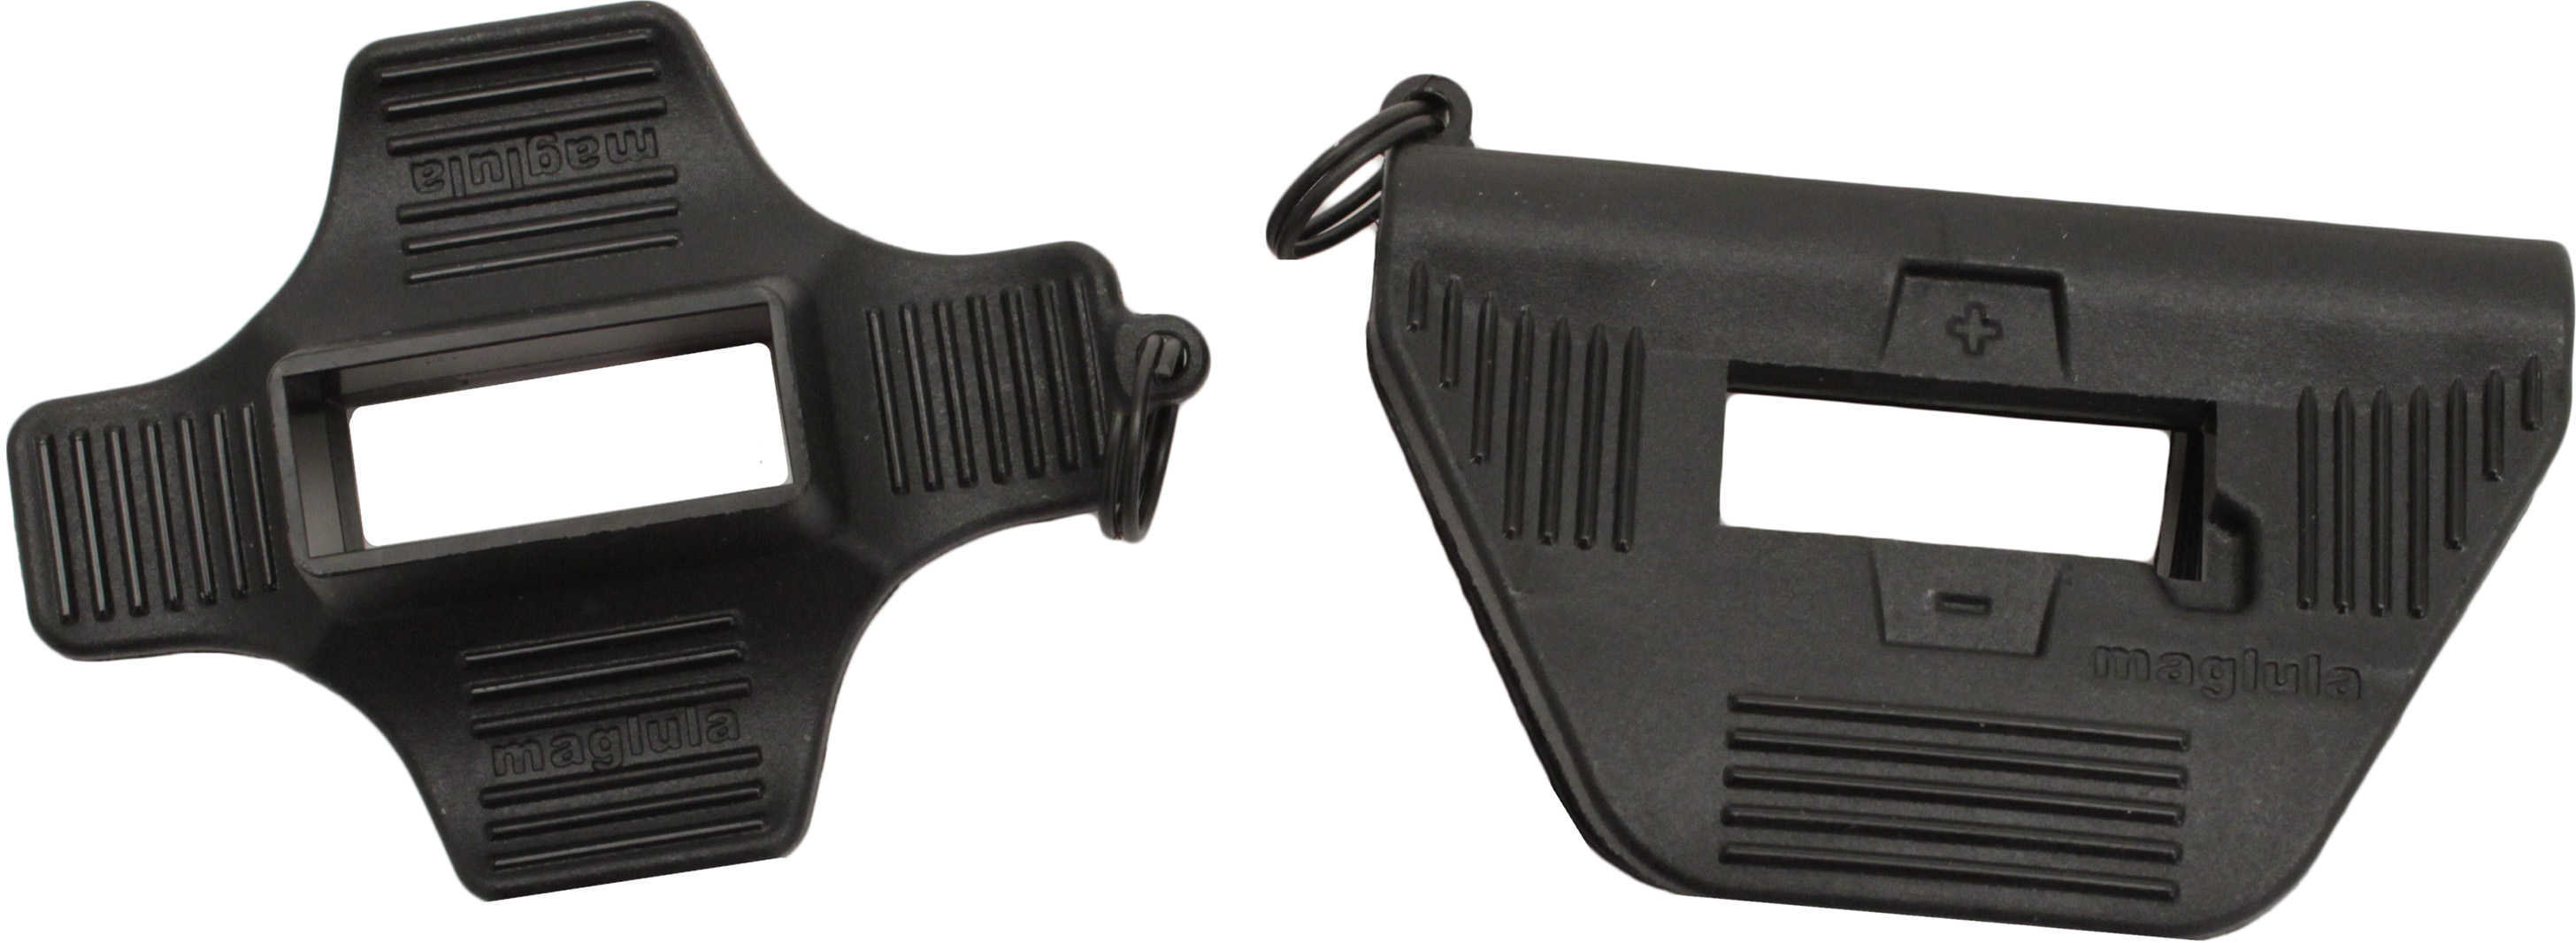 LULA X10 & V10 Mag Pistol Mag Loader XV80B